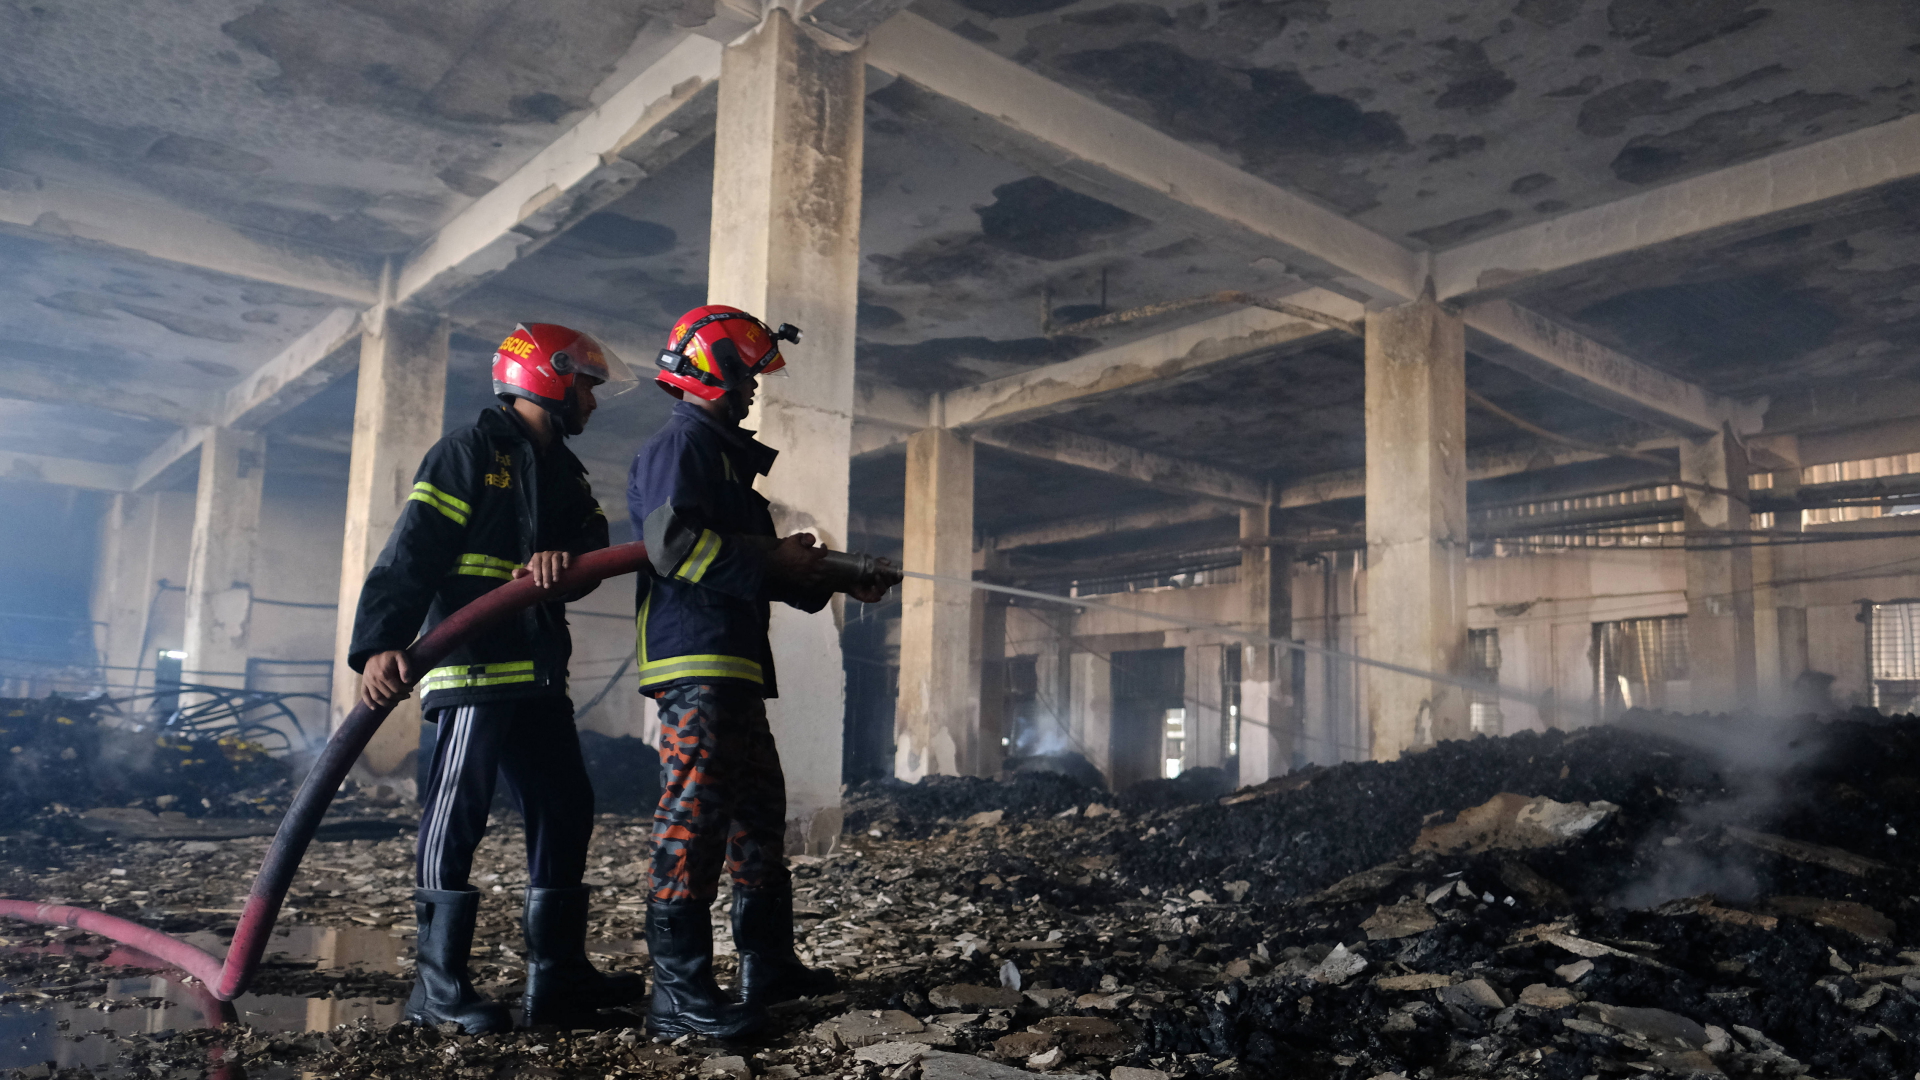 Feuerwehrleute löschen in einer ausgebrannten Fabrik in Bangladesch letzte Glutnester in den verkohlten Trümmern. | dpa